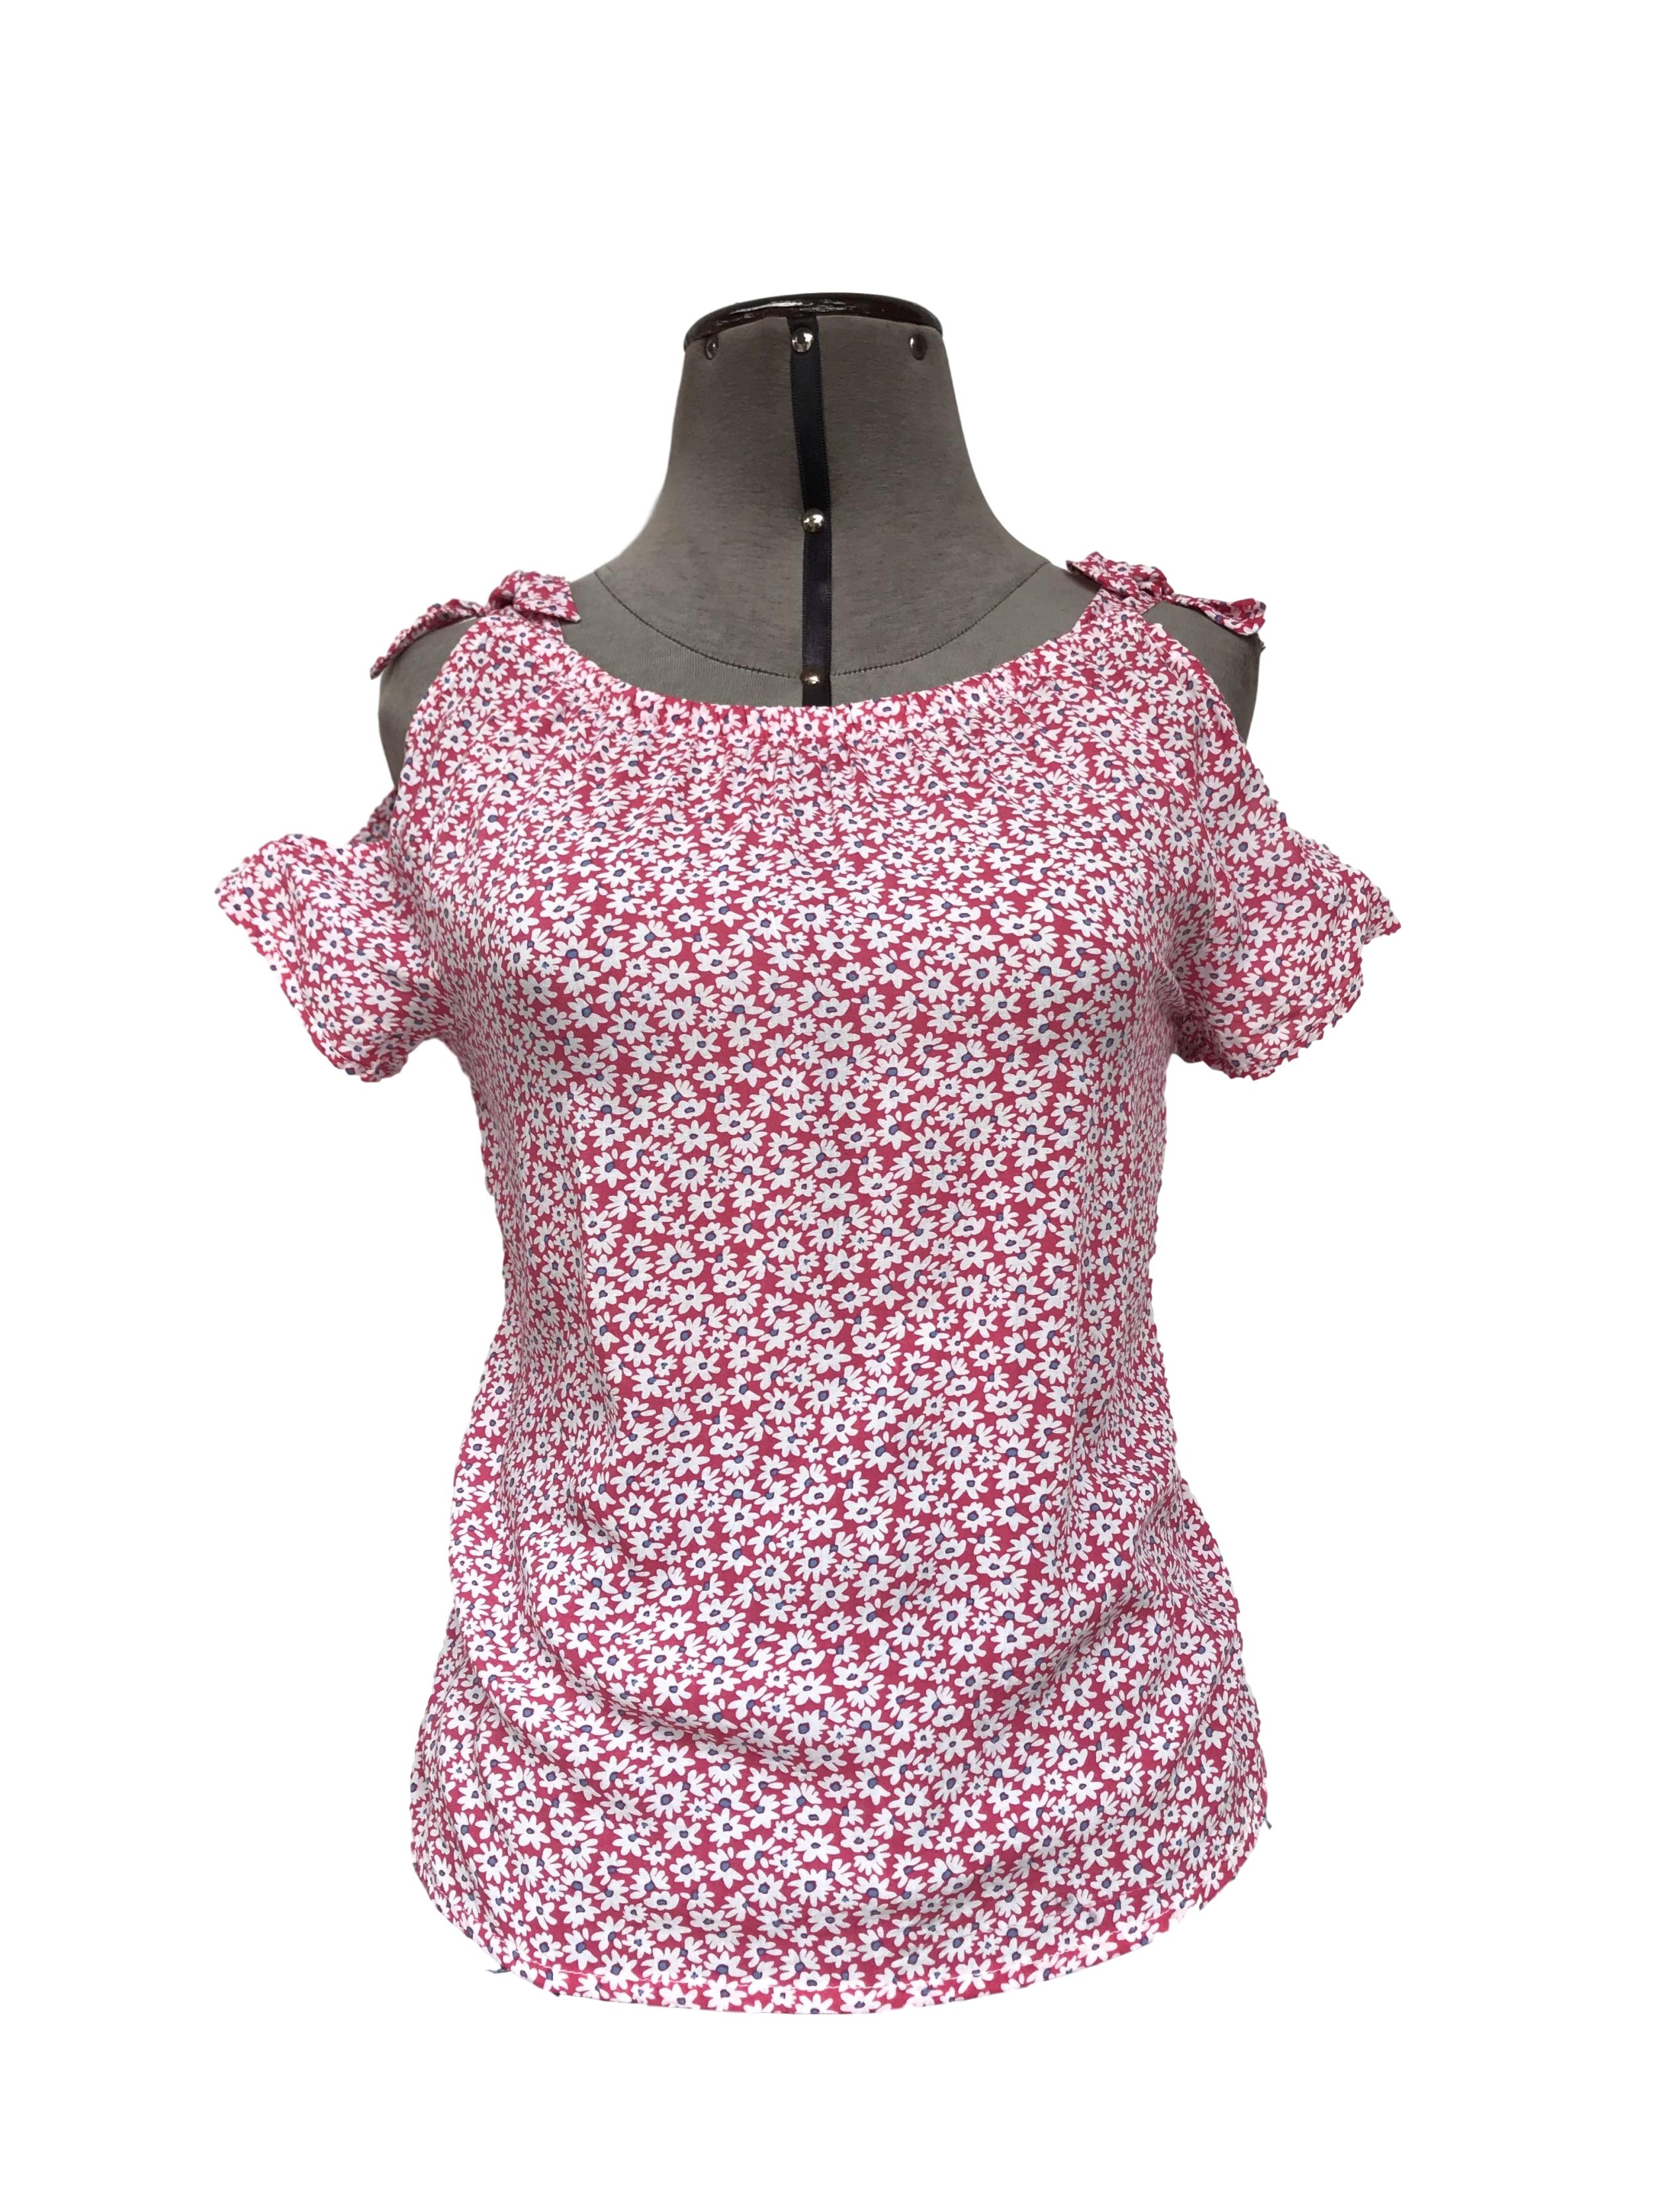 Blusa rosada con flores blancas, lazos y aberturas en los hombros
Talla XS